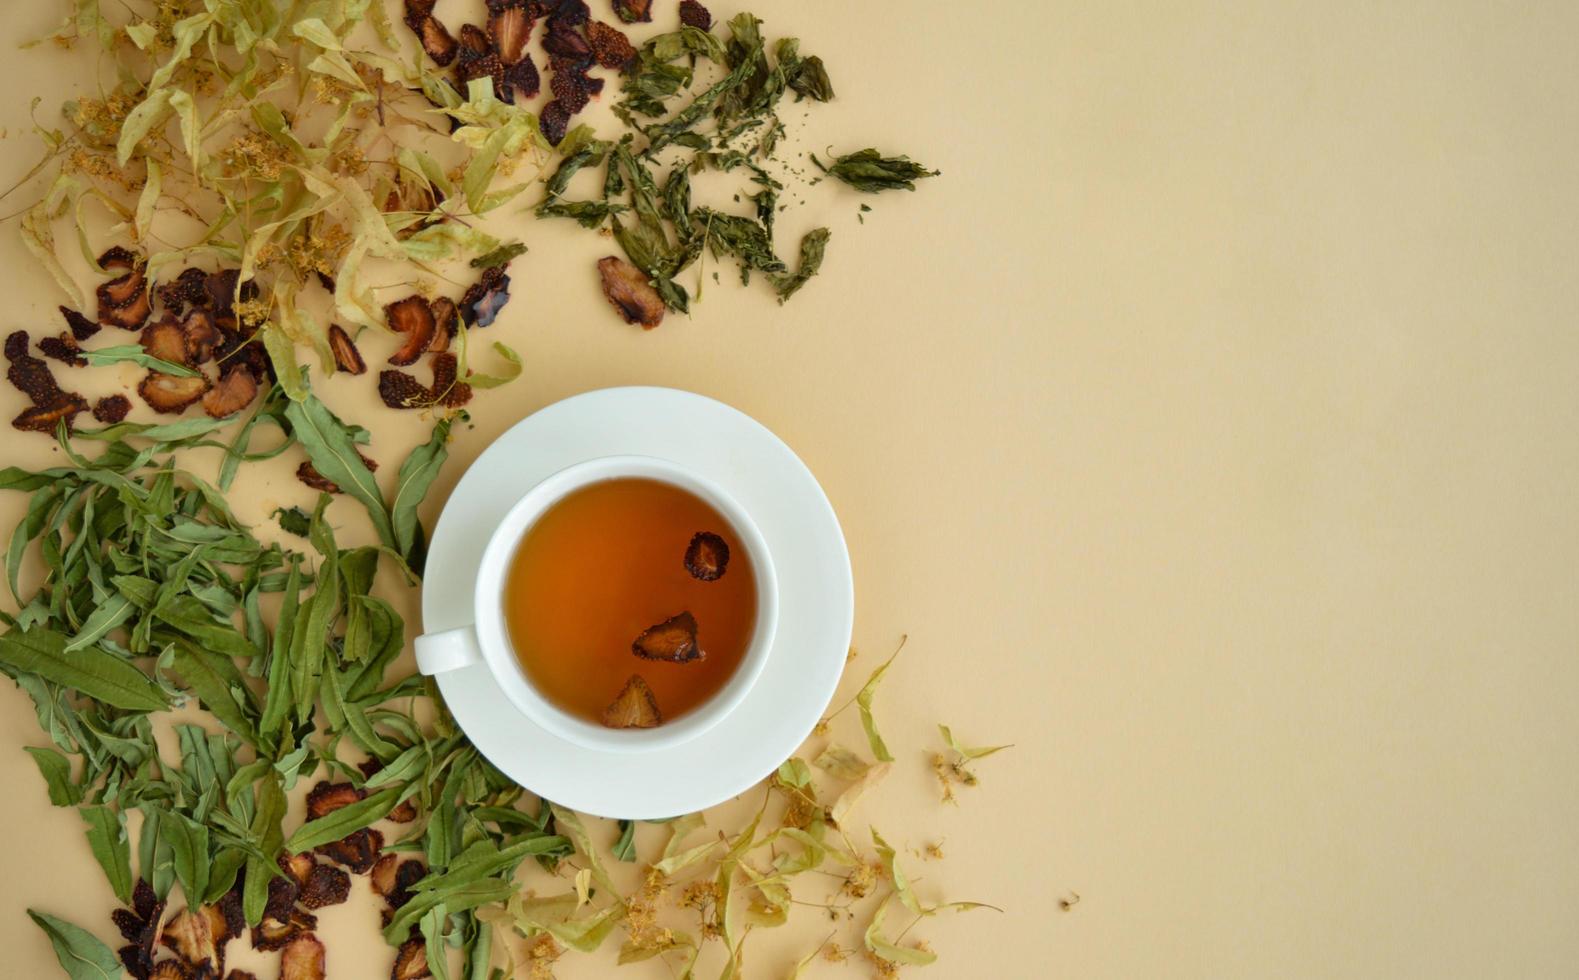 té de hierbas en una taza blanca para la belleza y la salud, hierbas secas, flores de tilo y fresas yacen alrededor. foto